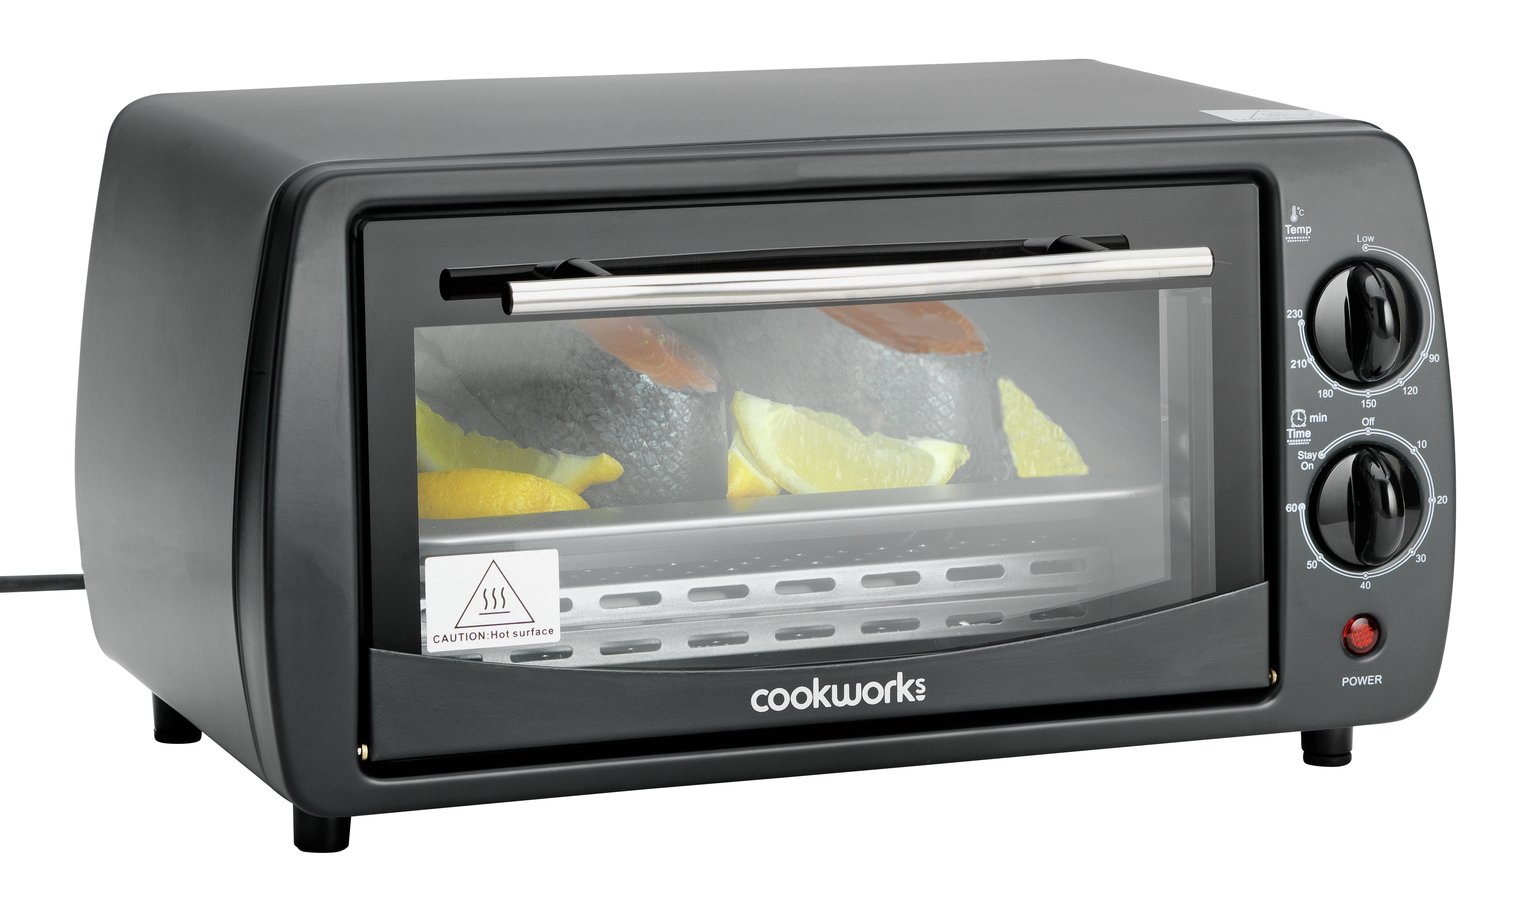 Cookworks 9L Toaster Oven